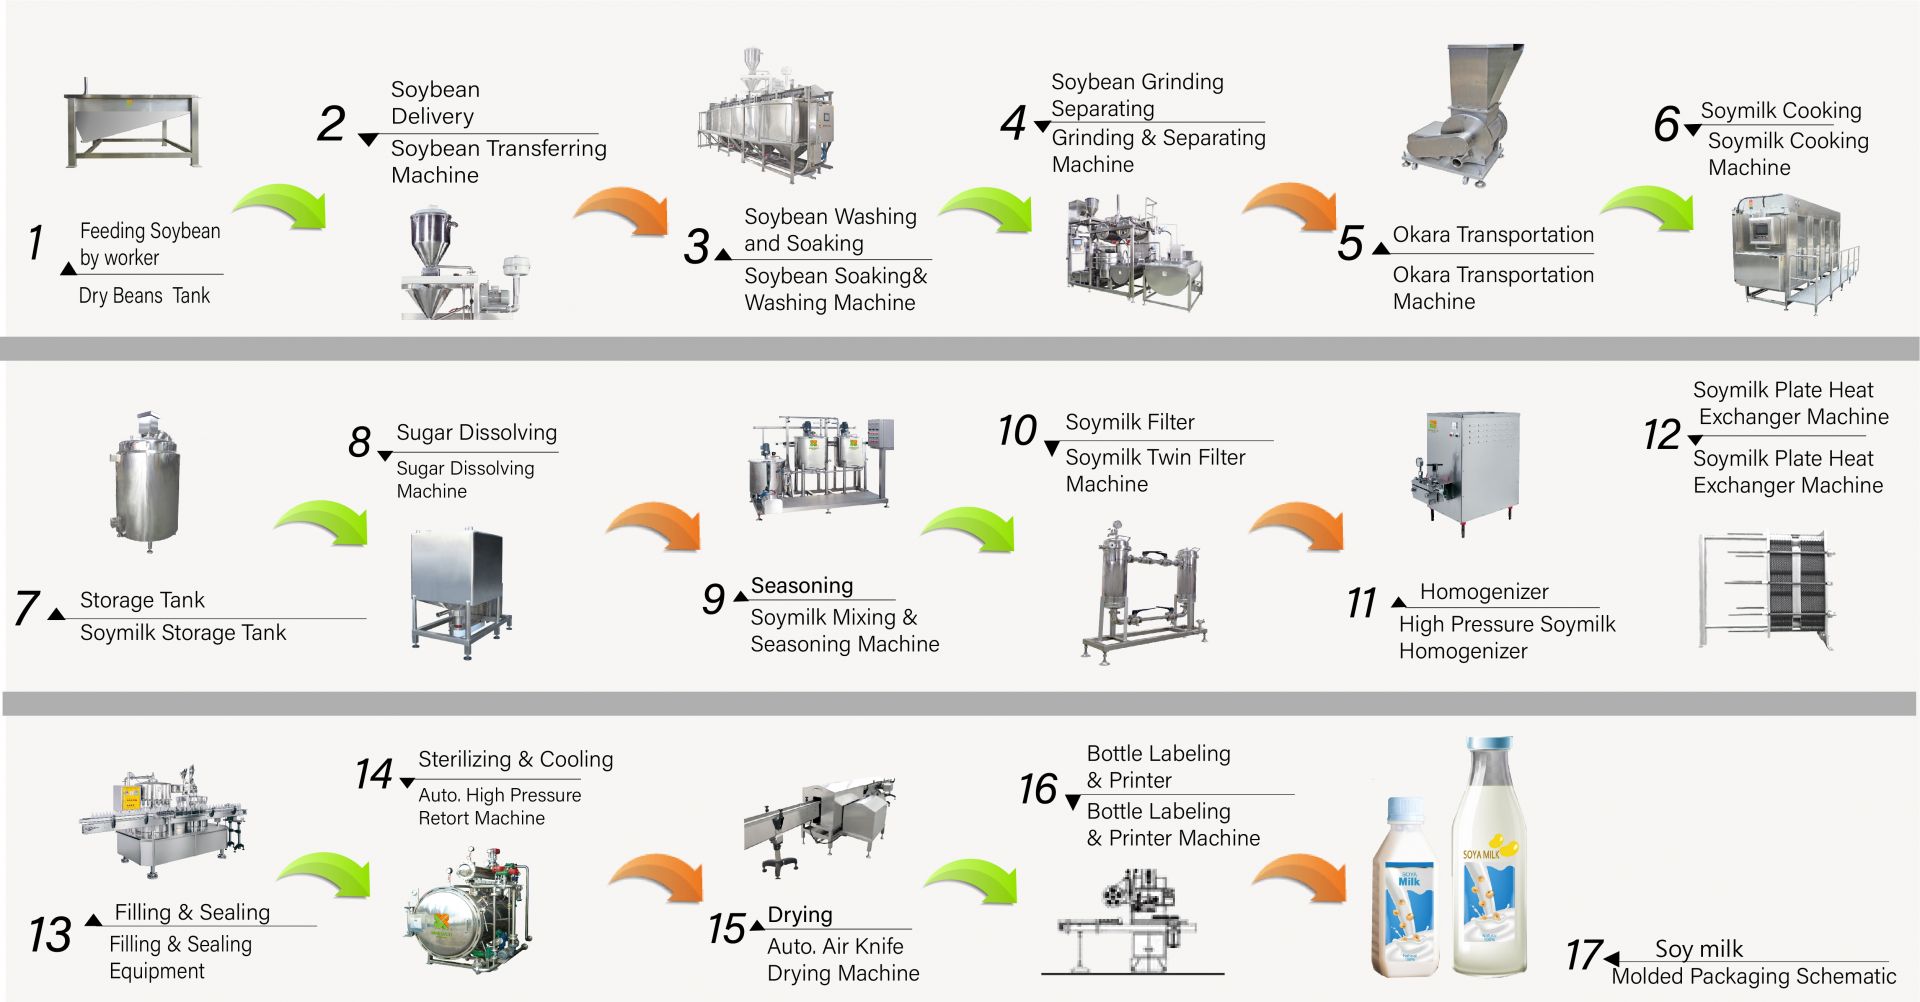 Procesul de fabricare a laptelui de soia în fabrică, Cum să faci lapte de soia, Producerea laptelui de soia, diagrama de flux a laptelui de soia, Procesul de fabricare a laptelui de soia, procesul de fabricare a laptelui de soia, procesul de fabricare a laptelui de soia, diagrama de flux a procesului de fabricare a laptelui de soia, Fluxul de procesare a laptelui de soia, Procesul de procesare a laptelui de soia, producția de lapte de soia, diagrama de flux a producției de lapte de soia, procesul de producție a laptelui de soia, diagrama de flux a procesării soia, Mașină automată de lapte de soia, Mașină automată de fabricat lapte de soia, Fabricant de Tofu ușor, Producția industrială de lapte de soia, Fabricarea industrială a laptelui de soia, Mașină industrială de lapte de soia, Mașină industrială de tofu, mașină de lapte vegetal, mașină de producție de lapte vegetal, producție de lapte de soia, Mașină de băuturi din soia, Linie de producție a băuturilor din soia, Mașină de băuturi din soia, mașină comercială de producție a laptelui de soia și tofu, mașină de producție a laptelui de soia și tofu, echipamente și utilaje pentru băuturi din lapte de soia, Mașină de gătit lapte de soia, fabrică de lapte de soia, mașină de lapte de soia, mașină de lapte de soia comercială, Mașină de lapte de soia fabricată în Taiwan, Mașină și echipament de lapte de soia, Fabricant de lapte de soia, Mașină de fabricat lapte de soia, Producători de lapte de soia, Producție de lapte de soia, echipamente de producție de lapte de soia, fabrică de producție de lapte de soia, linie de producție de lapte de soia, prețul mașinii de fabricat lapte de soia, mașină de prelucrare a soia, fabrică de lapte de soia, mașină de lapte de soia